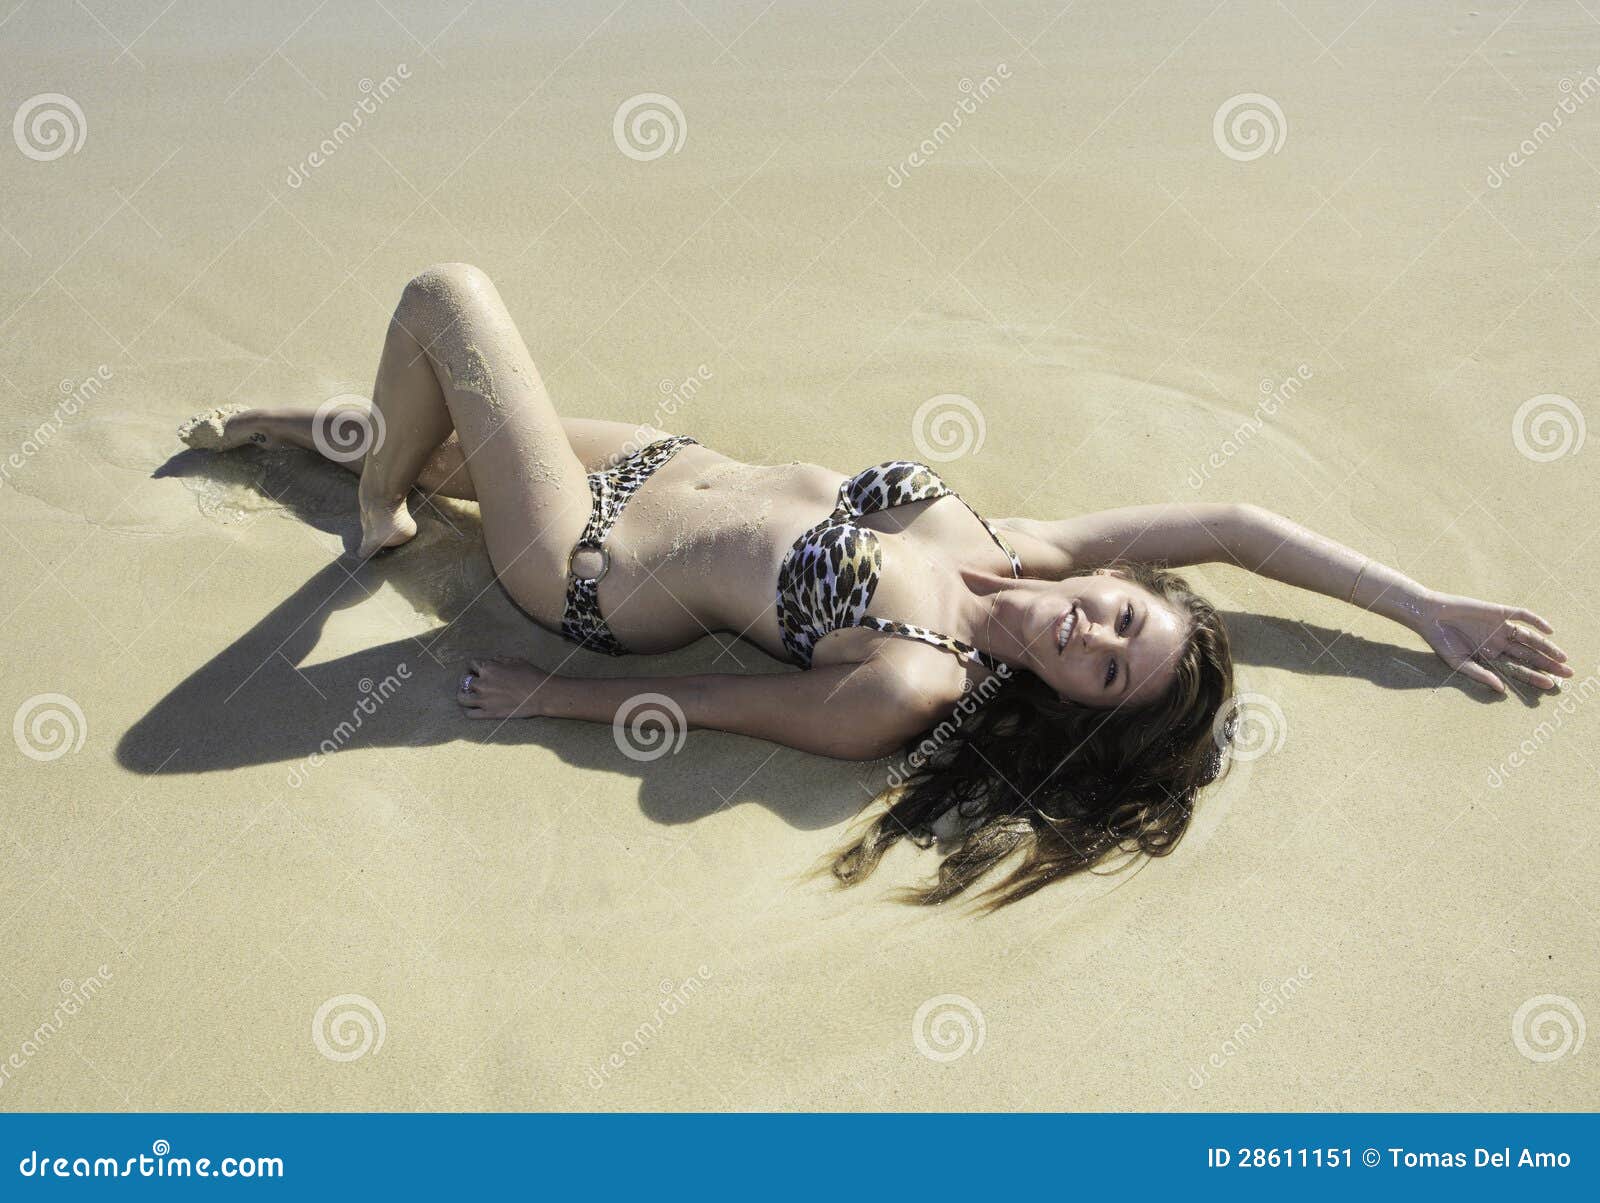 Girl In Bikini Lying On A Sandy Beach Stock Image Image Of Beautiful Hawaii